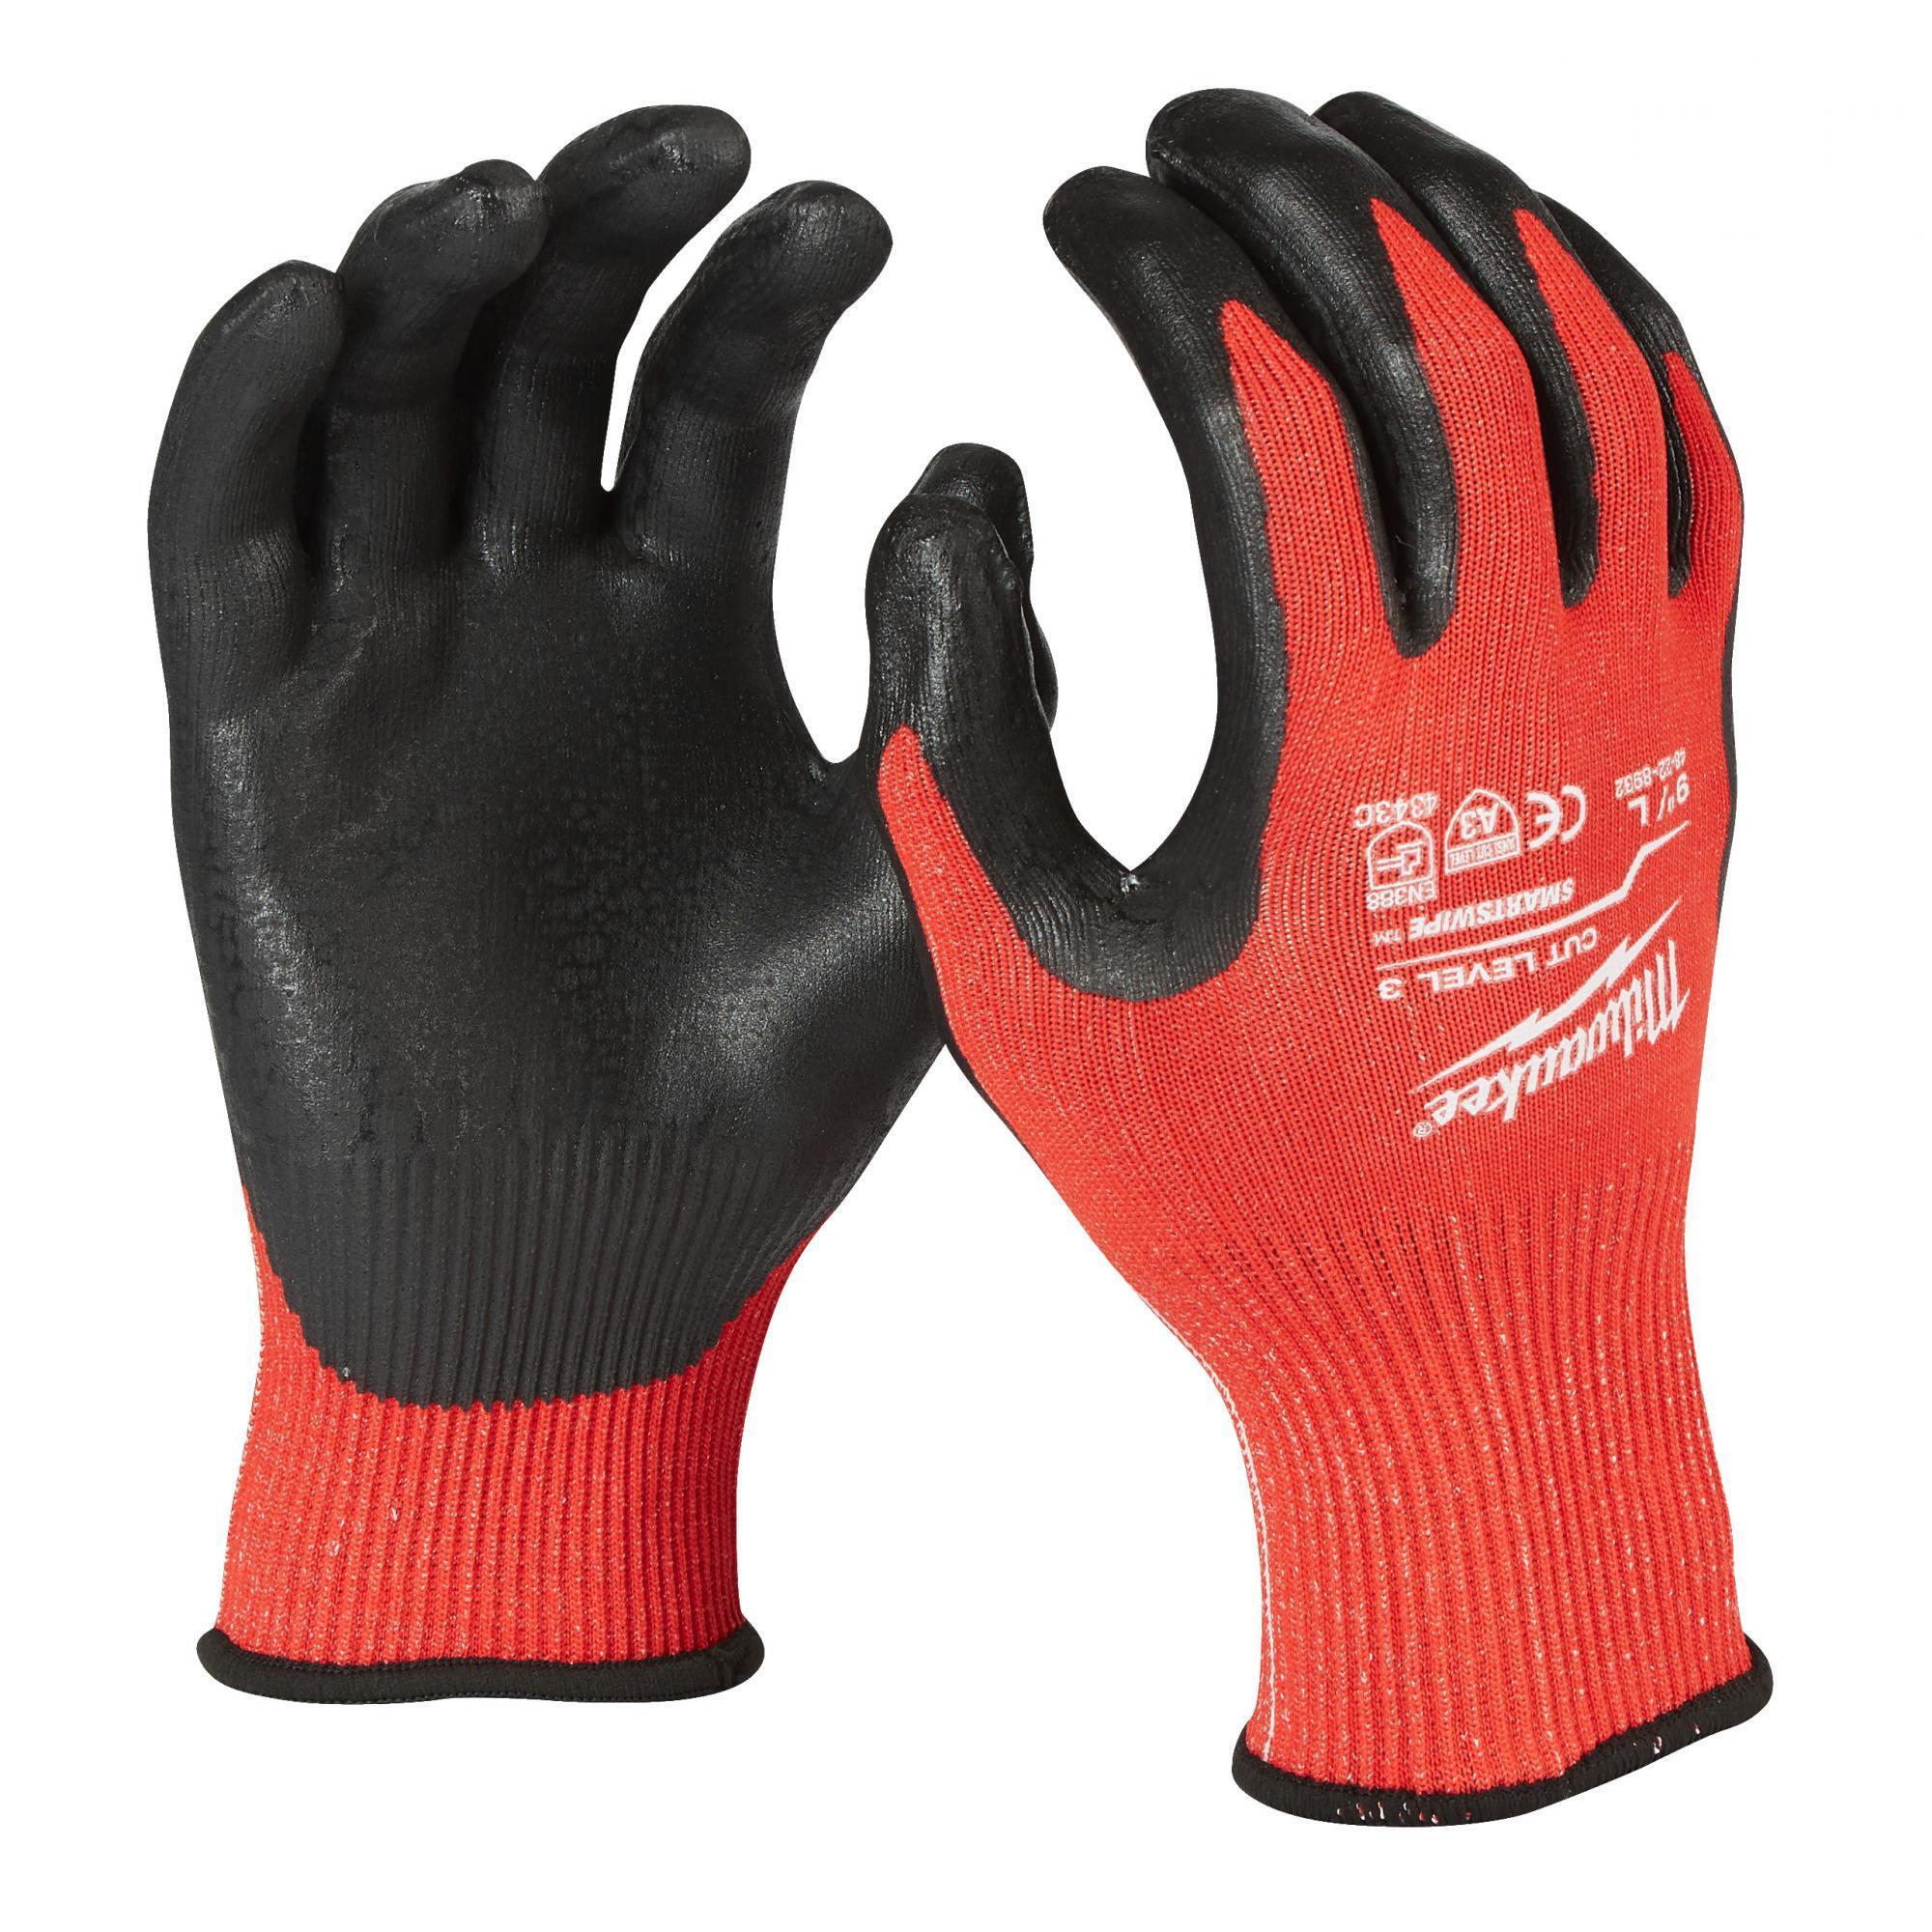 Перчатки защитные Milwaukee Cut Level 3/C, размер L/9, 4932471619, 1 пара перчатки husqvarna technical c защитой от порезов бензопилой р 10 5950034 10